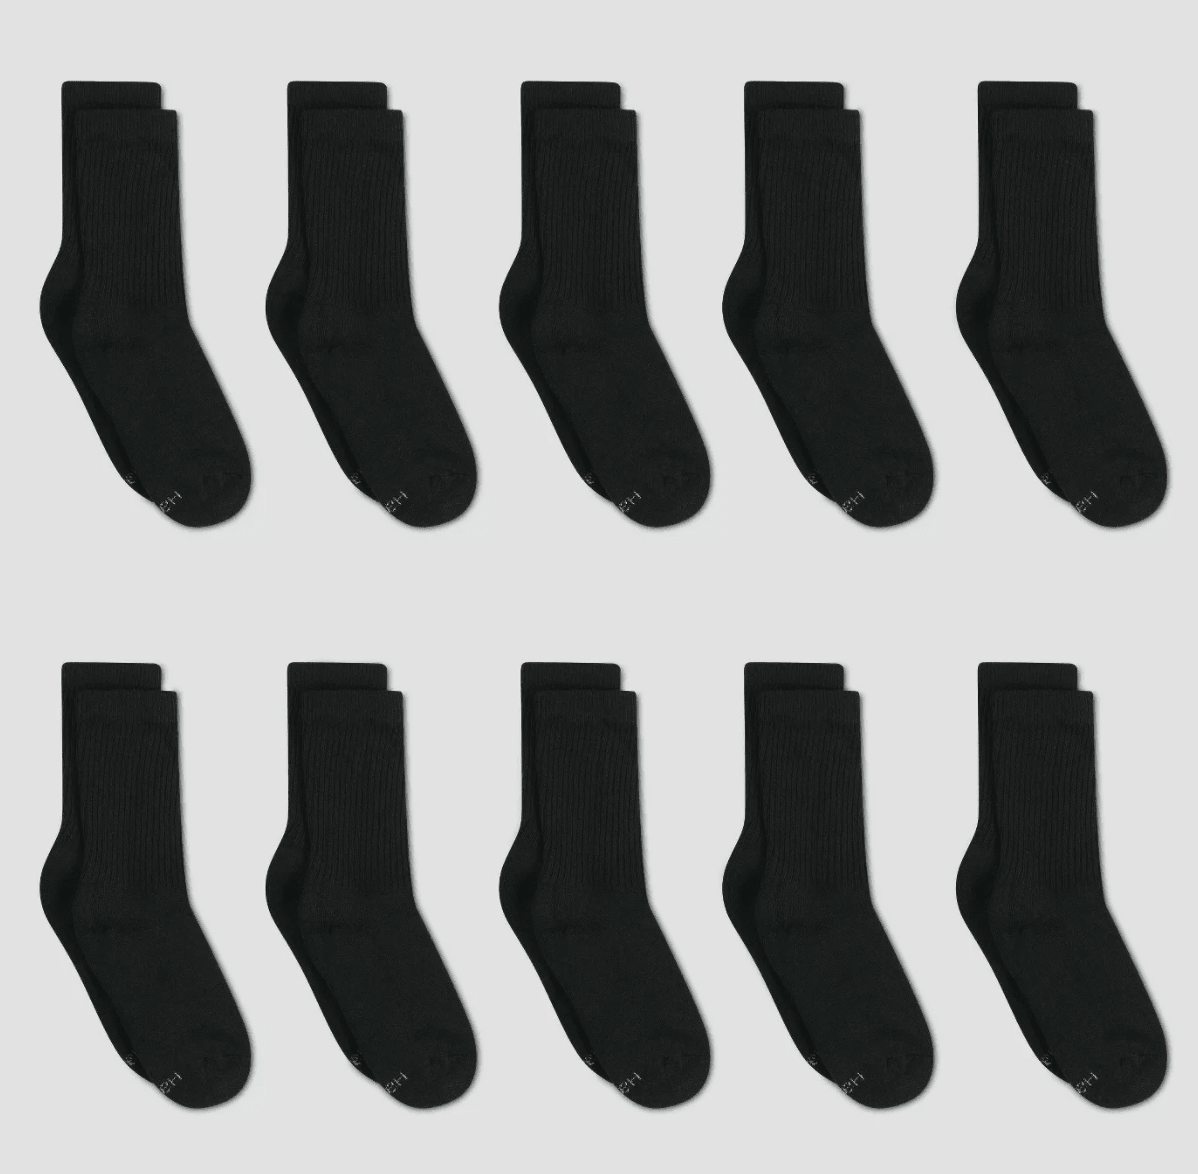 11 best for women: Socks that'll last longer